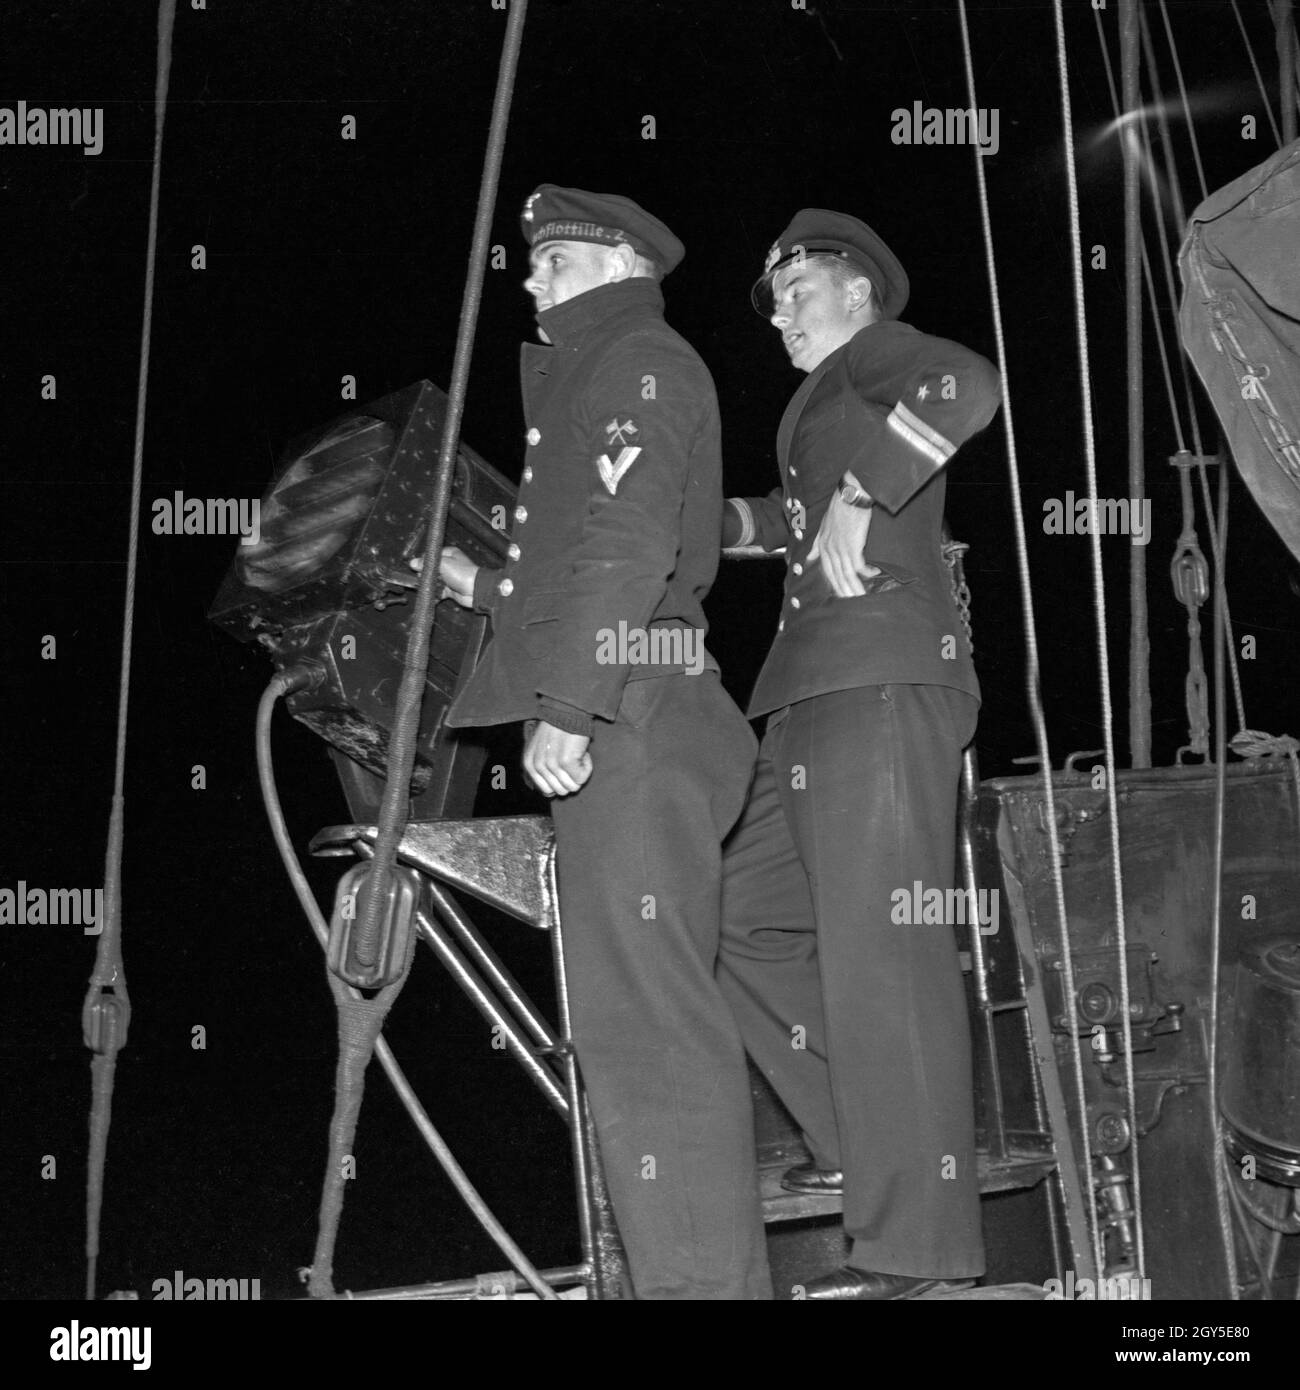 Matrosenobergefreiter und Oberleutnant zur finden Sie in der 2. Minensuchflottille bei der Nachtwache, Deutschland 1930er Jahre. Marine Lance Corporal und nav Oberleutnant in der Nacht Sentinel, Deutschland 1930. Stockfoto